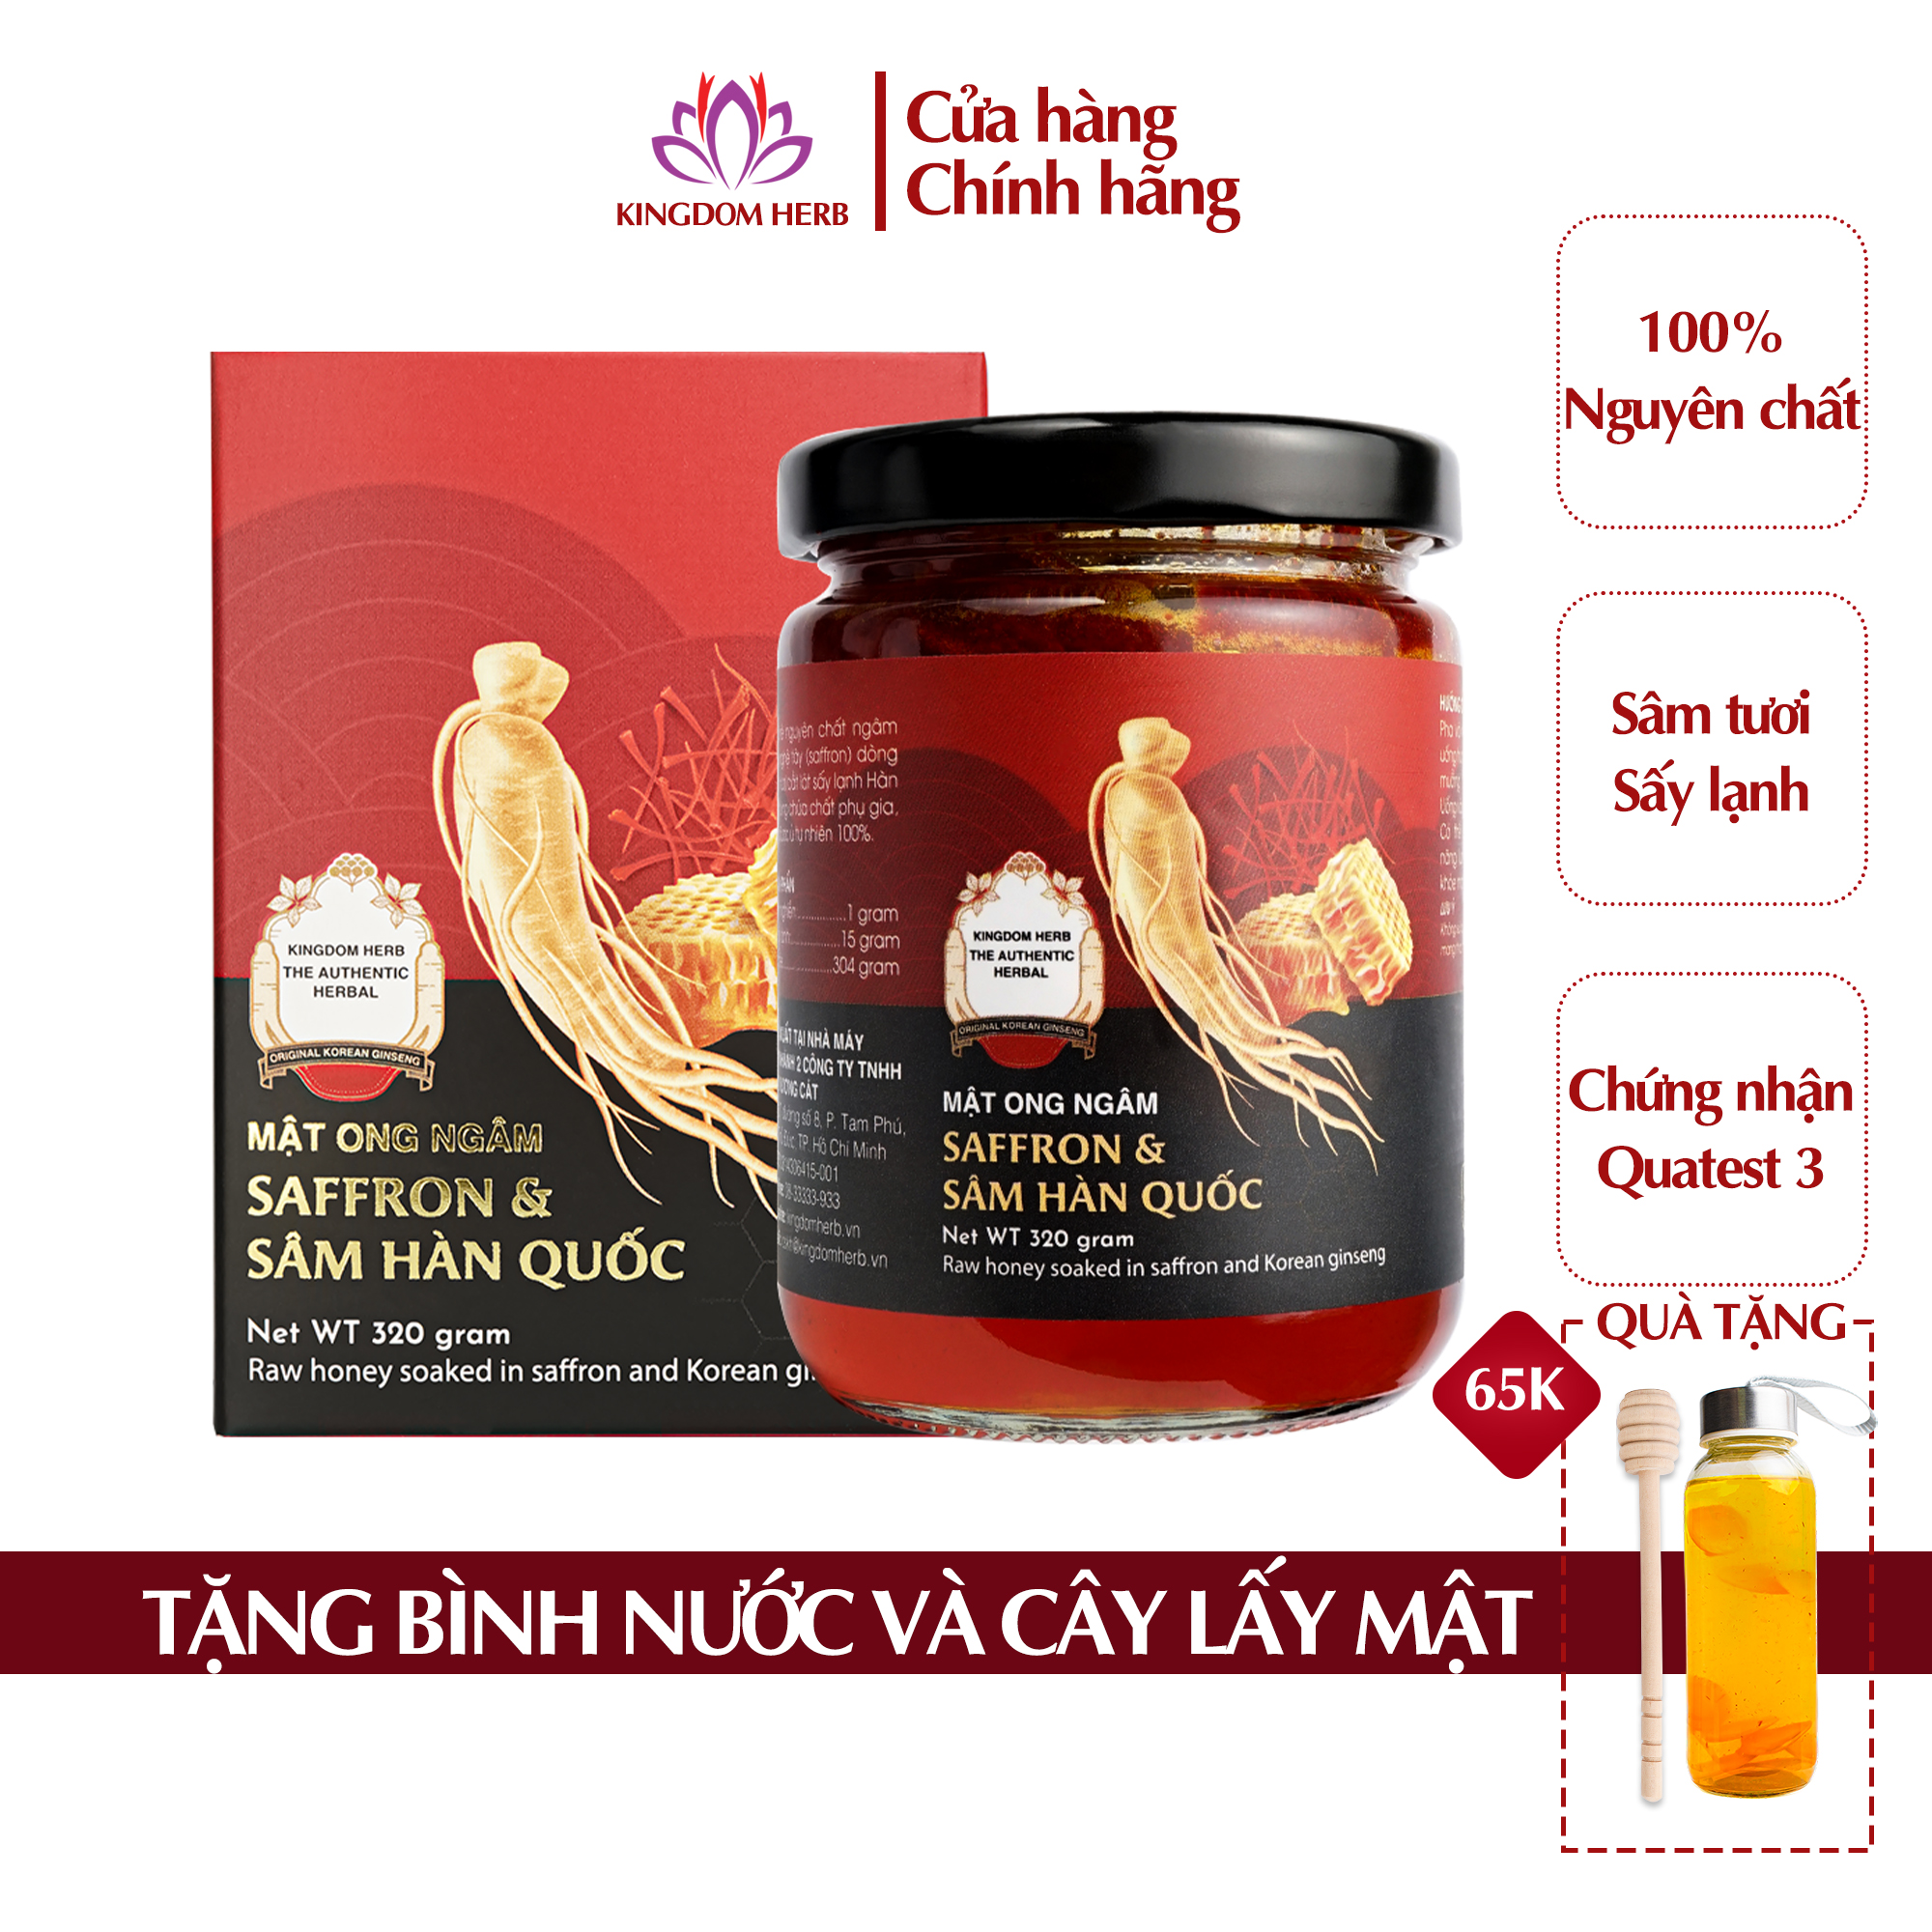 Sâm mật ong saffron Kingdom Herb chính hãng thượng hạng hộp 320g (tặng que lấy mật và bình thuỷ tinh)